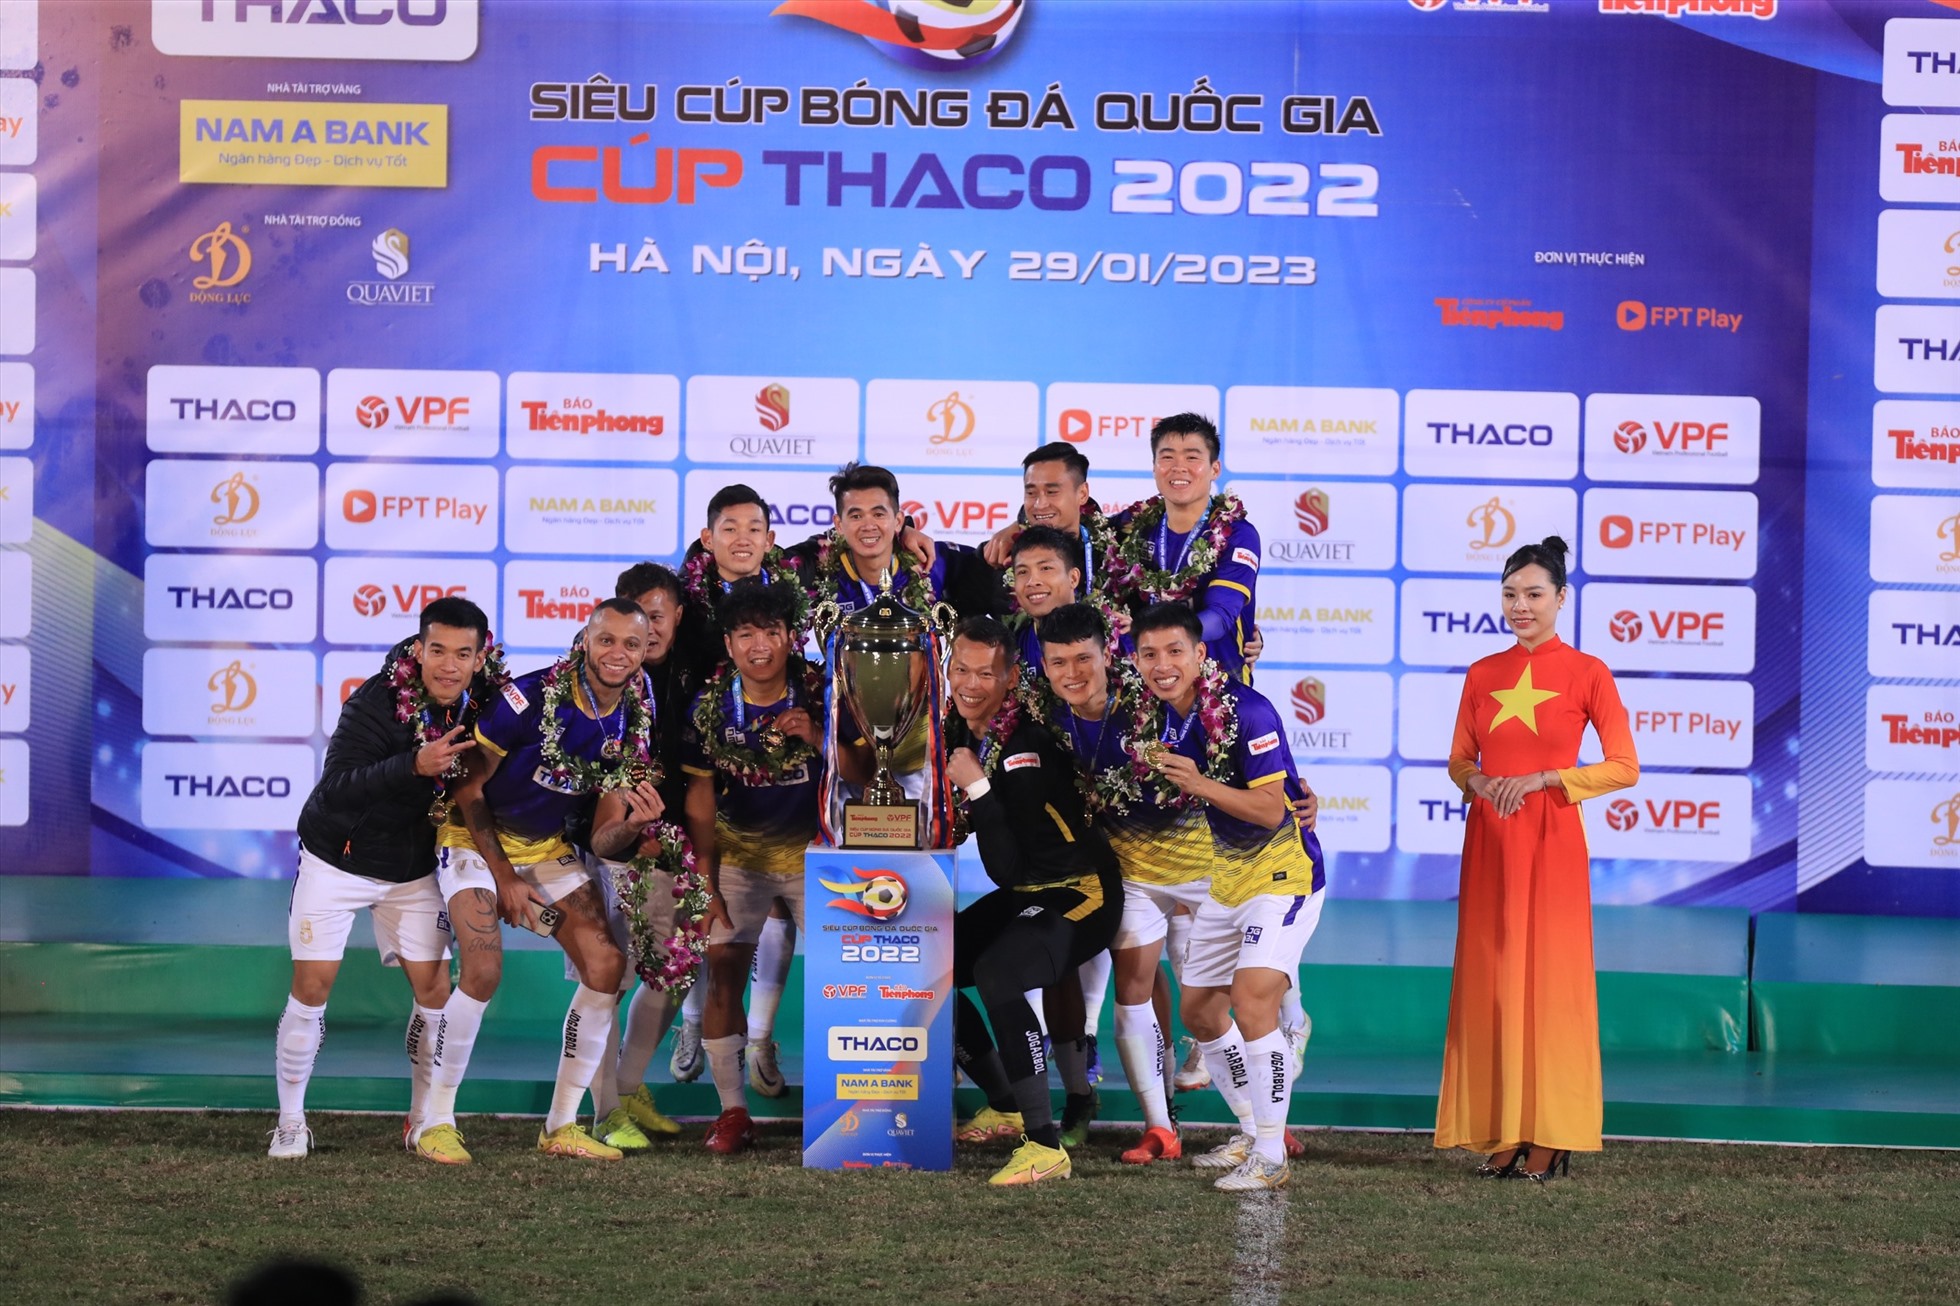 Với chiến thắng này, đương kim vô địch V.League chính thức đăng quang tại Siêu cúp Quốc gia 2022.